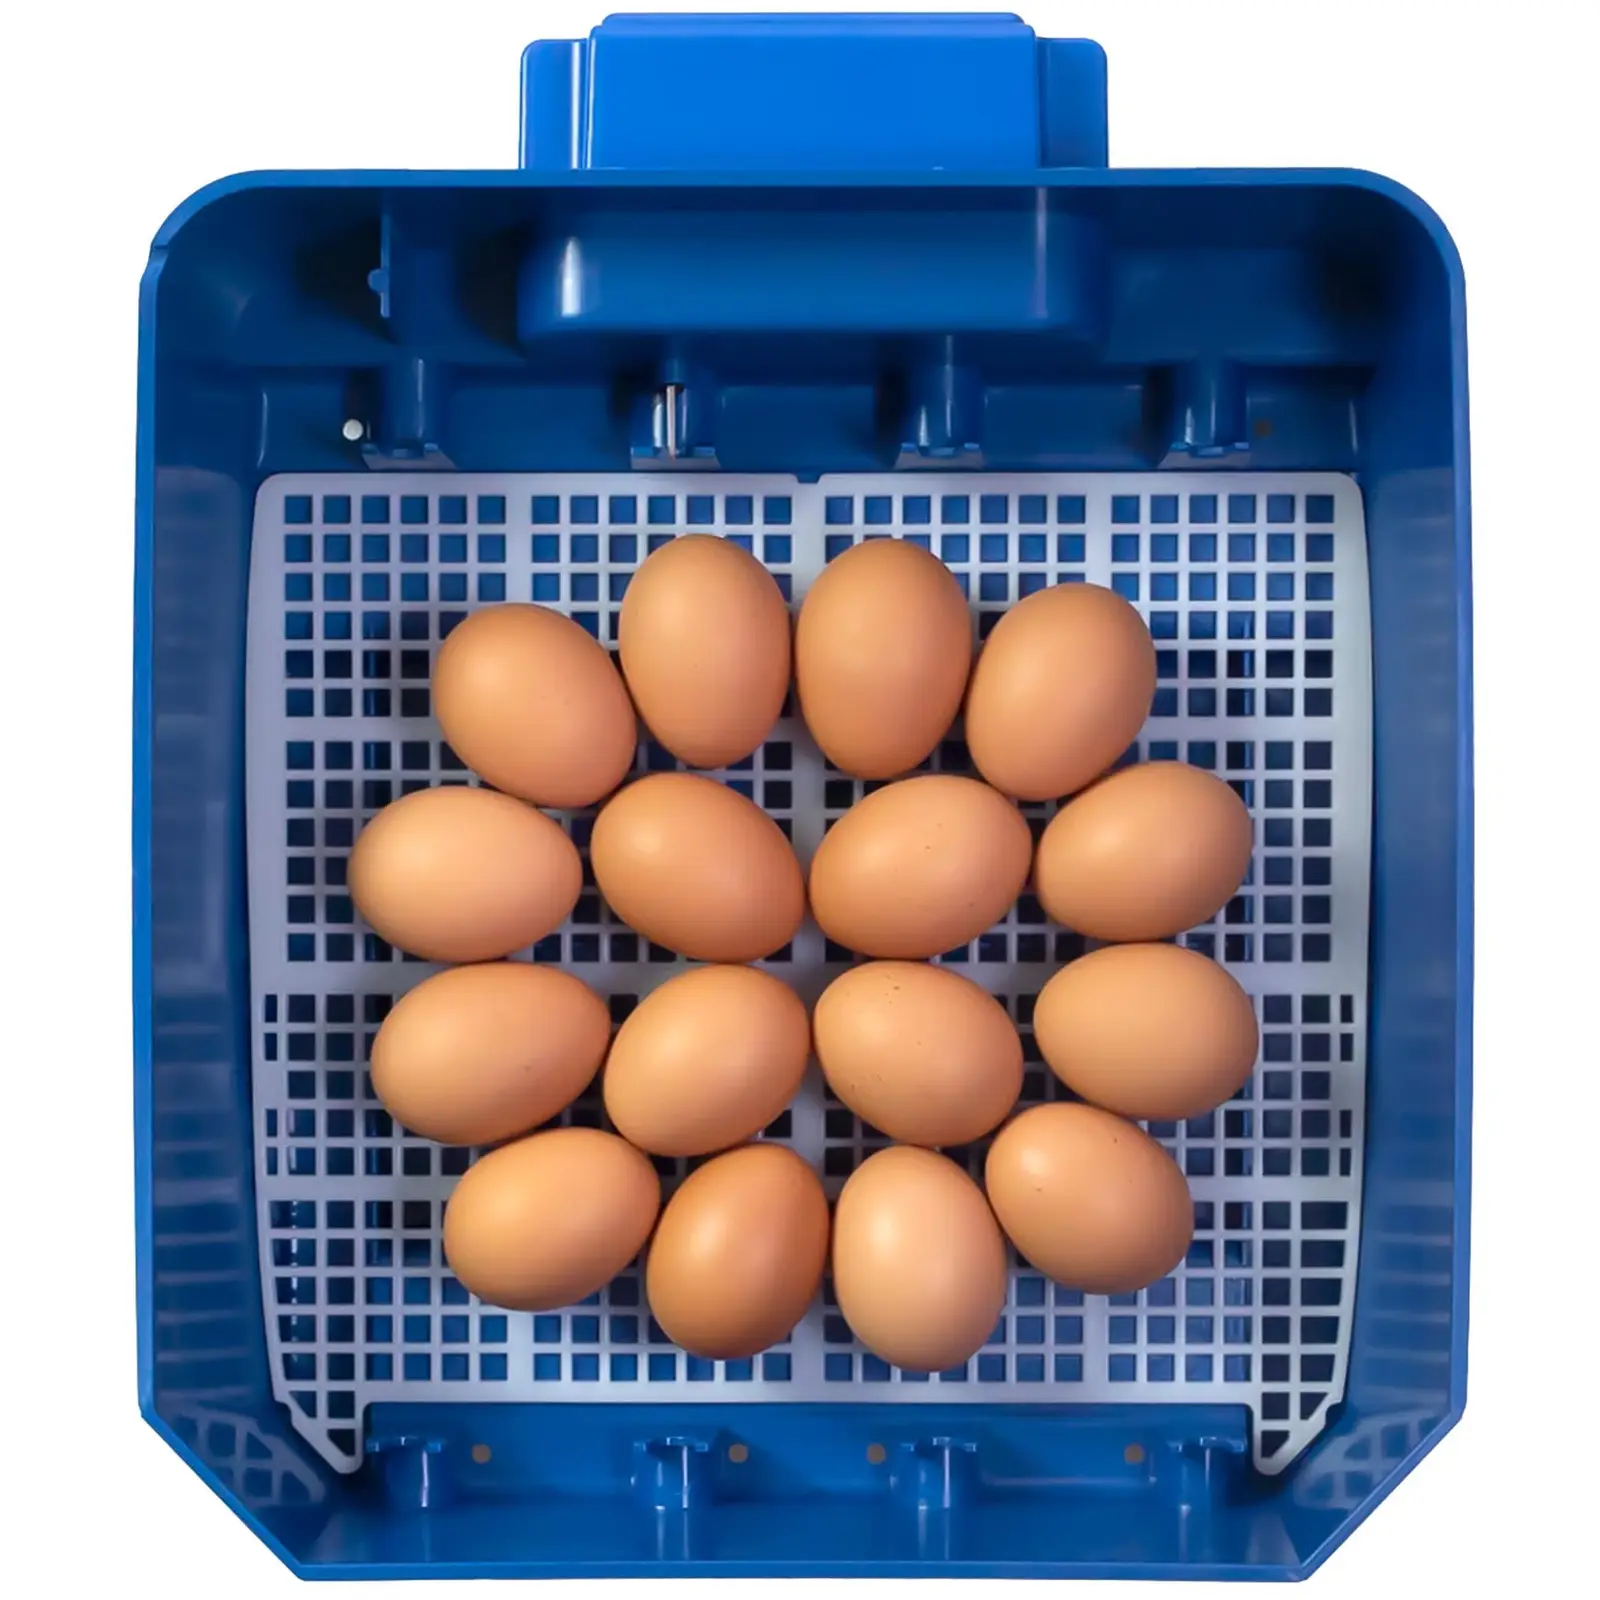 Keltetőgép - 16 tojás - teljesen automatikus - antimikrobiális Biomaster védelem